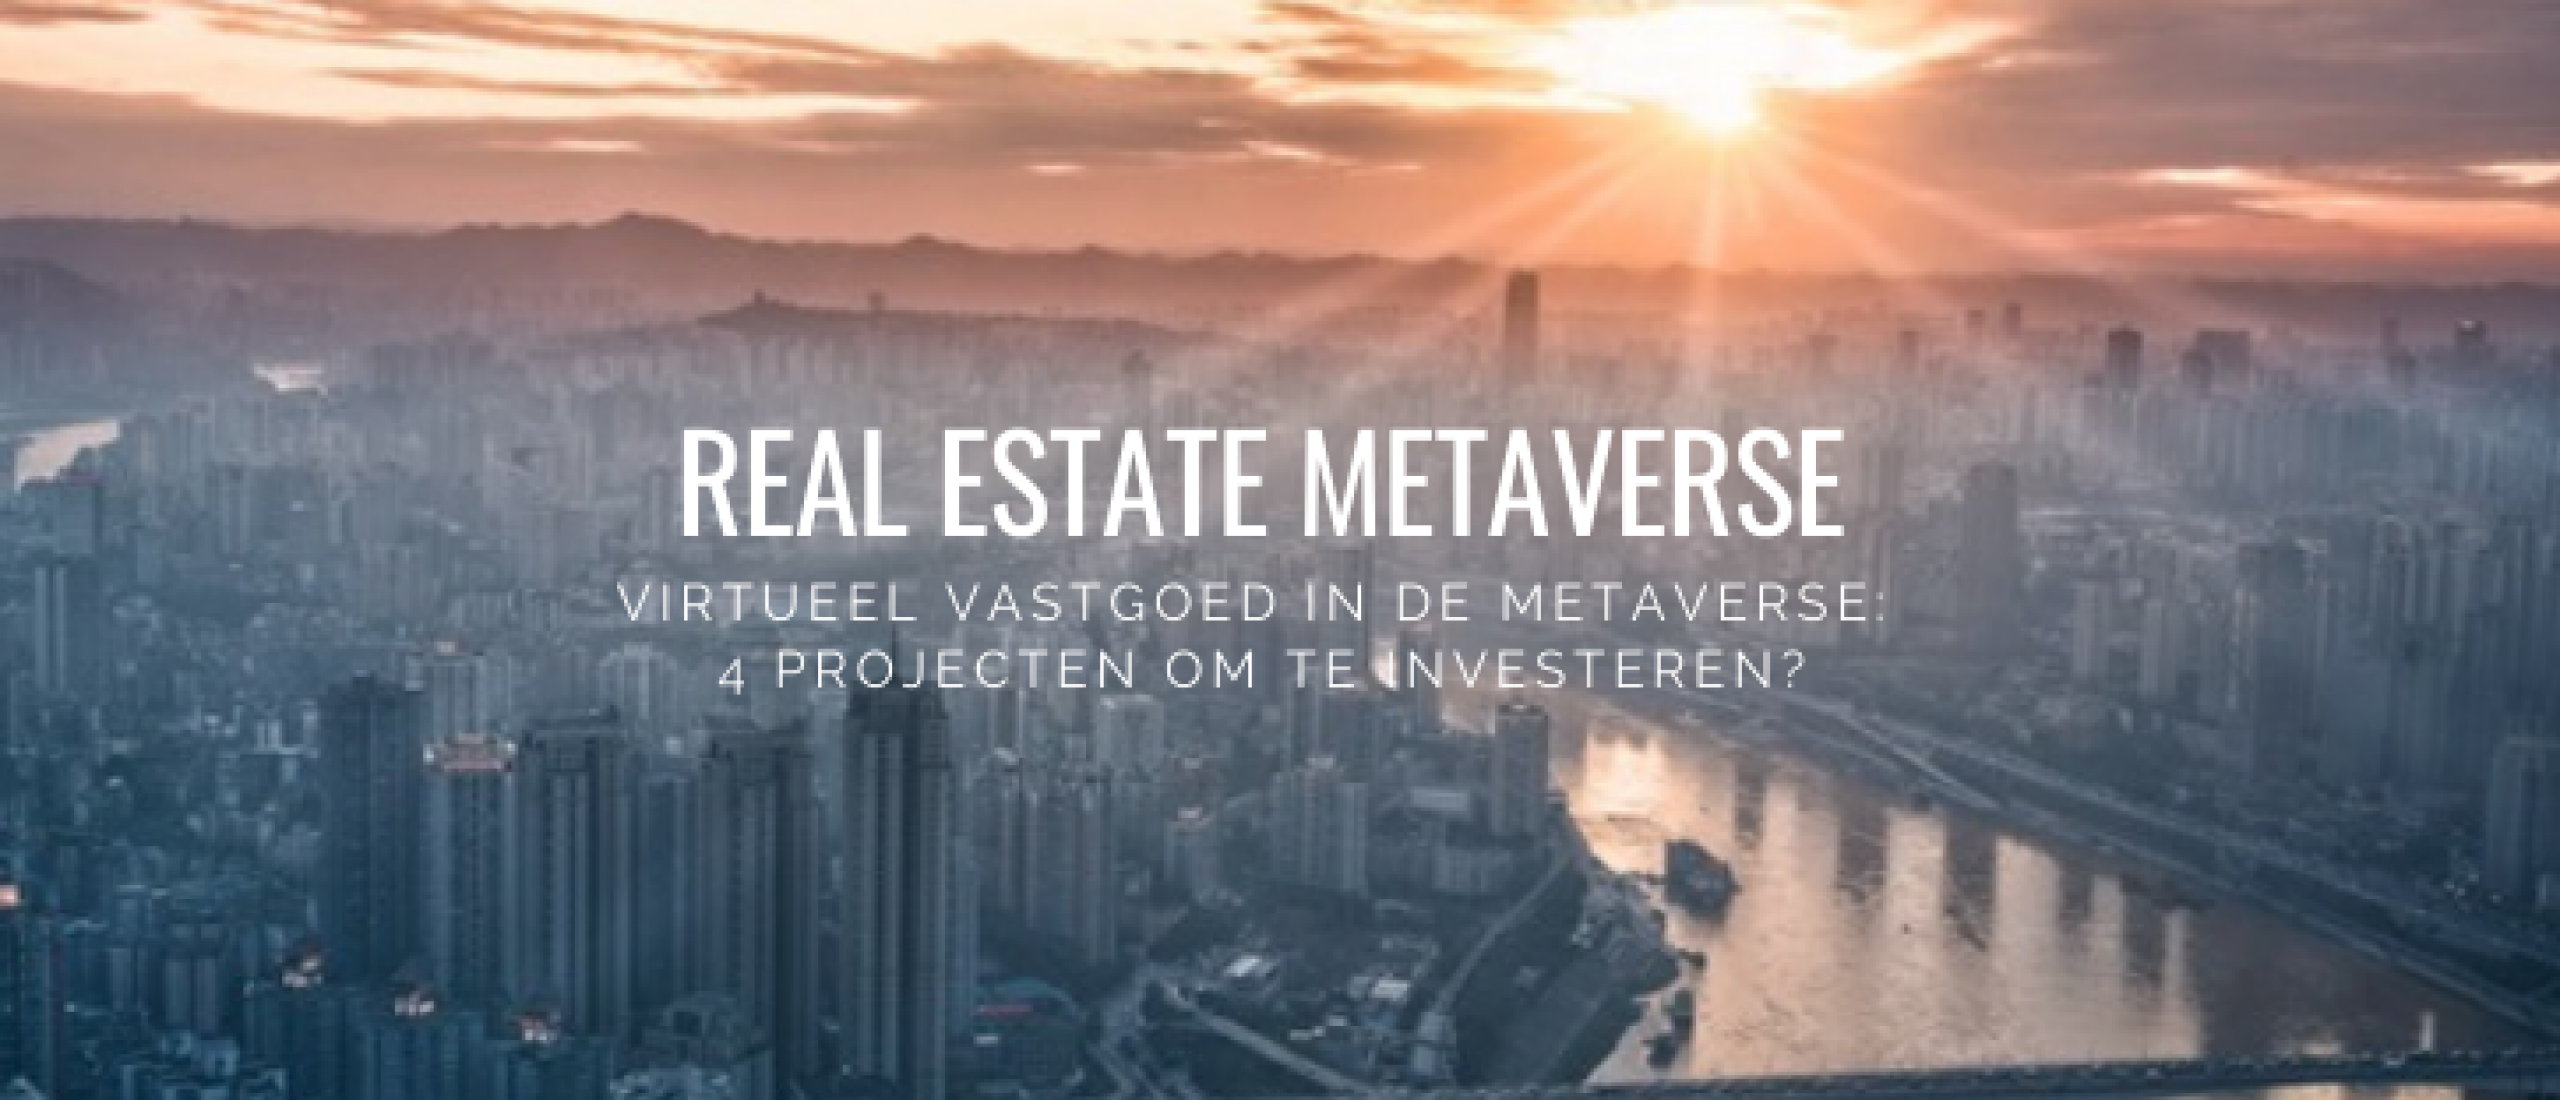 Real Estate Metaverse: Projecten, Nieuws en Ontwikkelingen